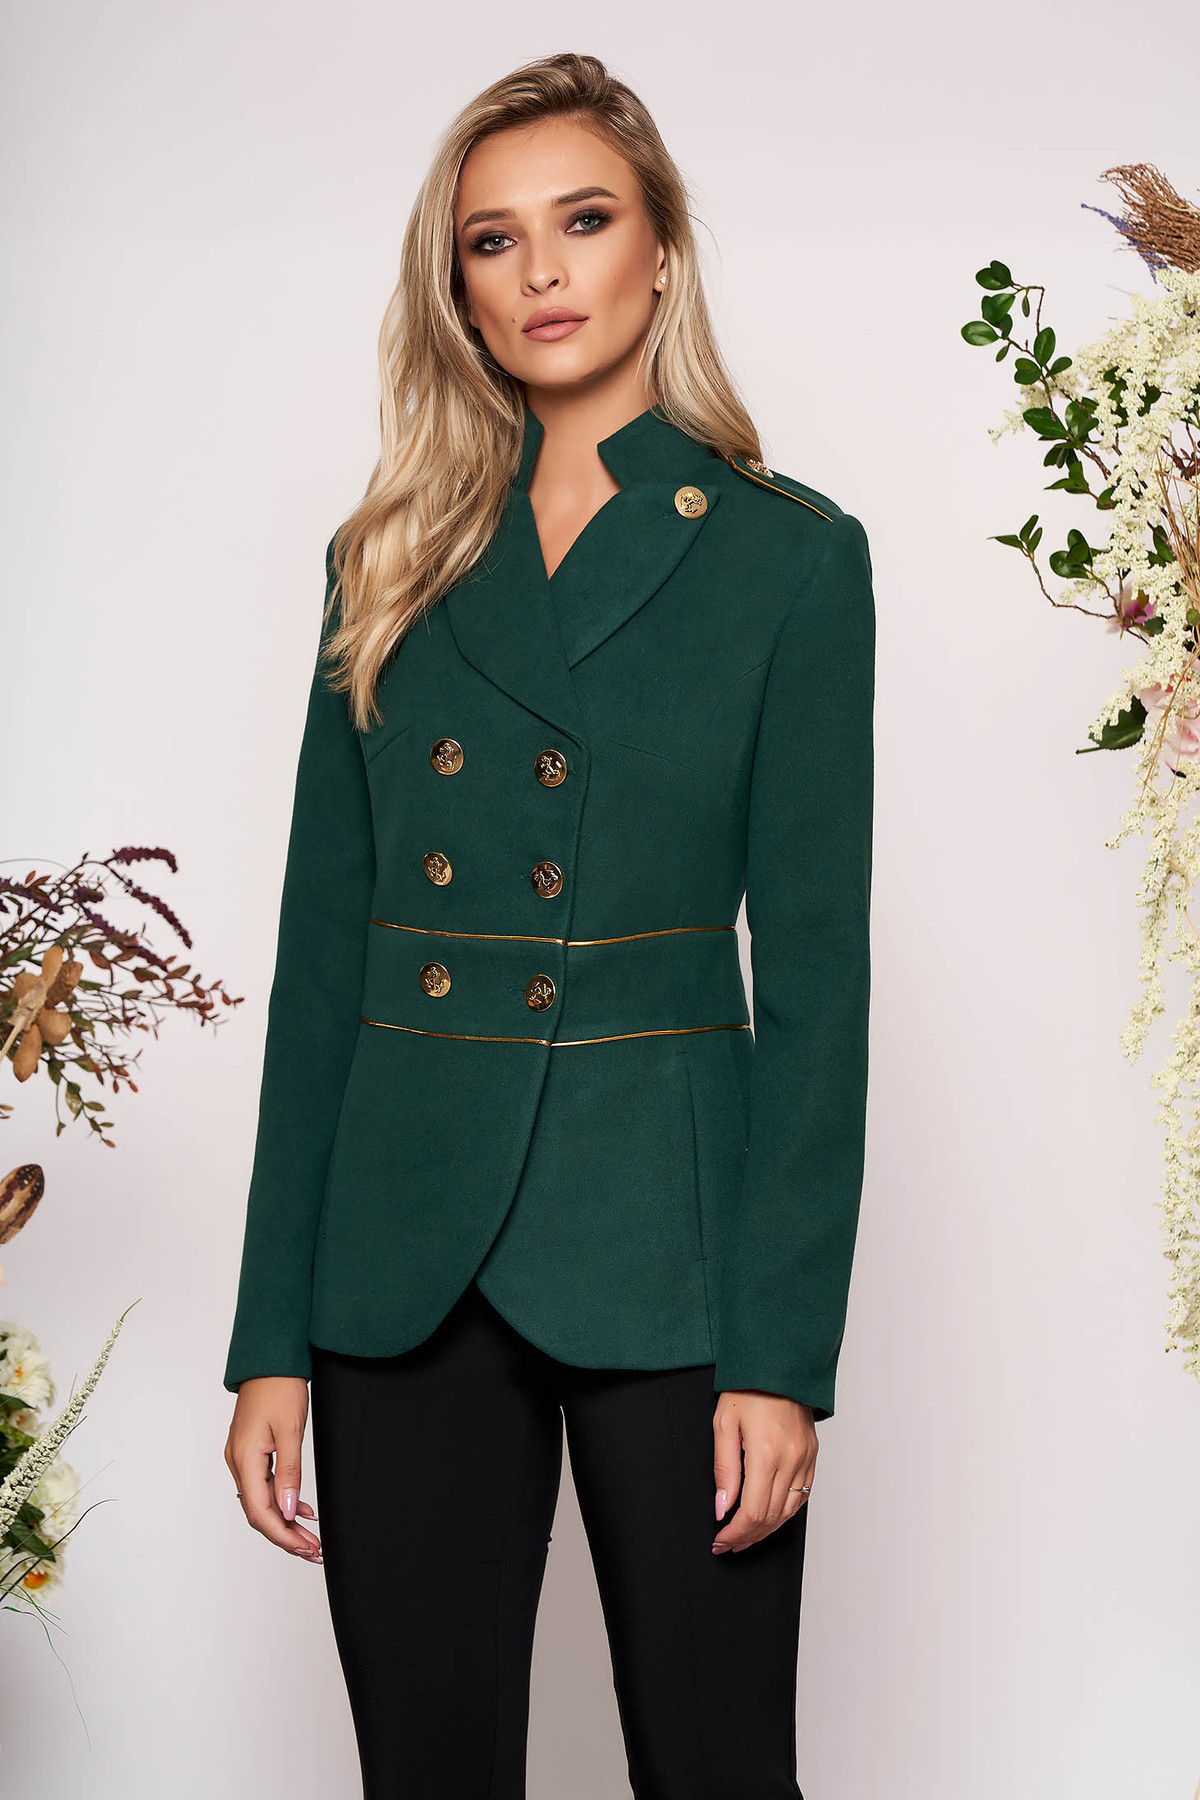 Jacheta LaDonna verde-inchis elegant scurt material gros cu maneca lunga inchidere cu nasturi aurii